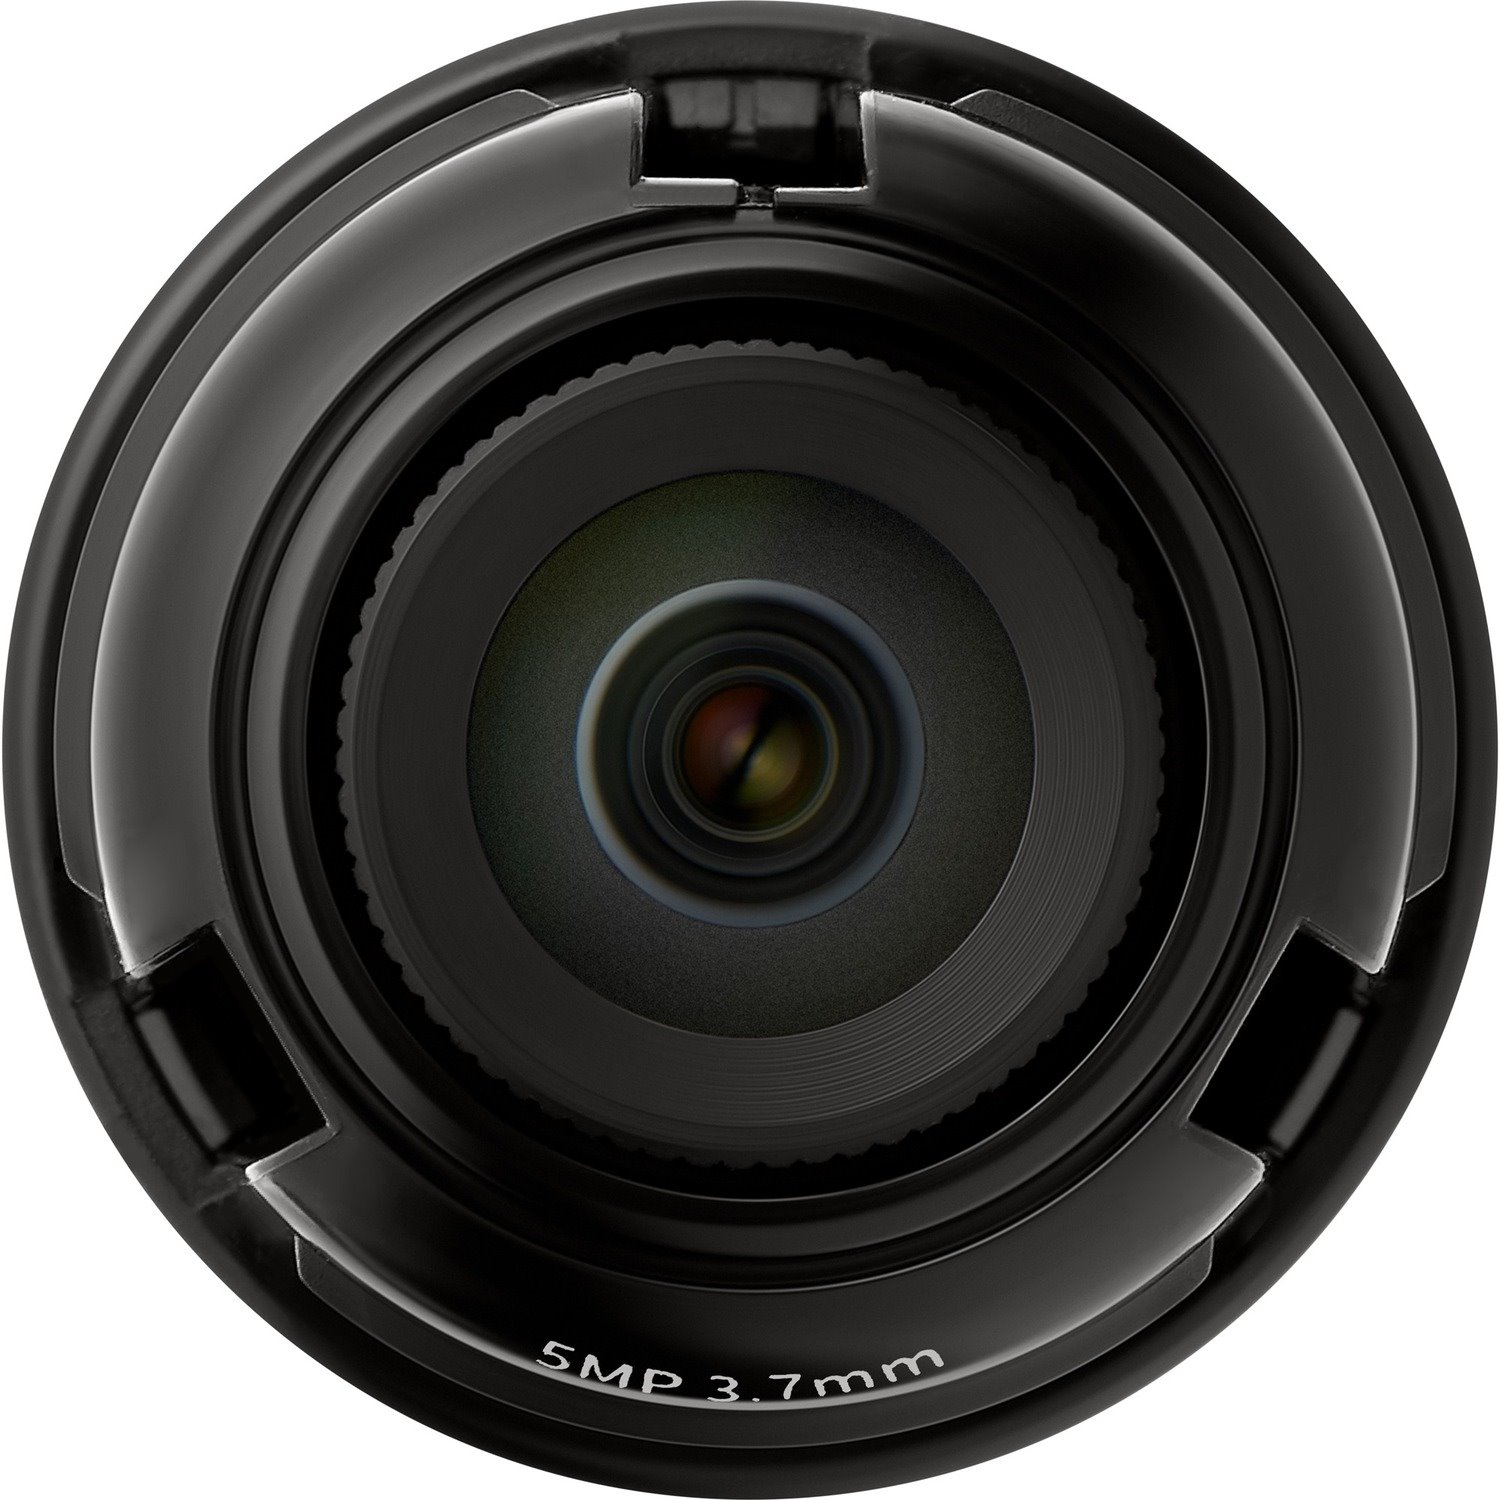 Wisenet SLA-5M3700P - 3.70 mmf/1.6 - Fixed Lens for M12-mount